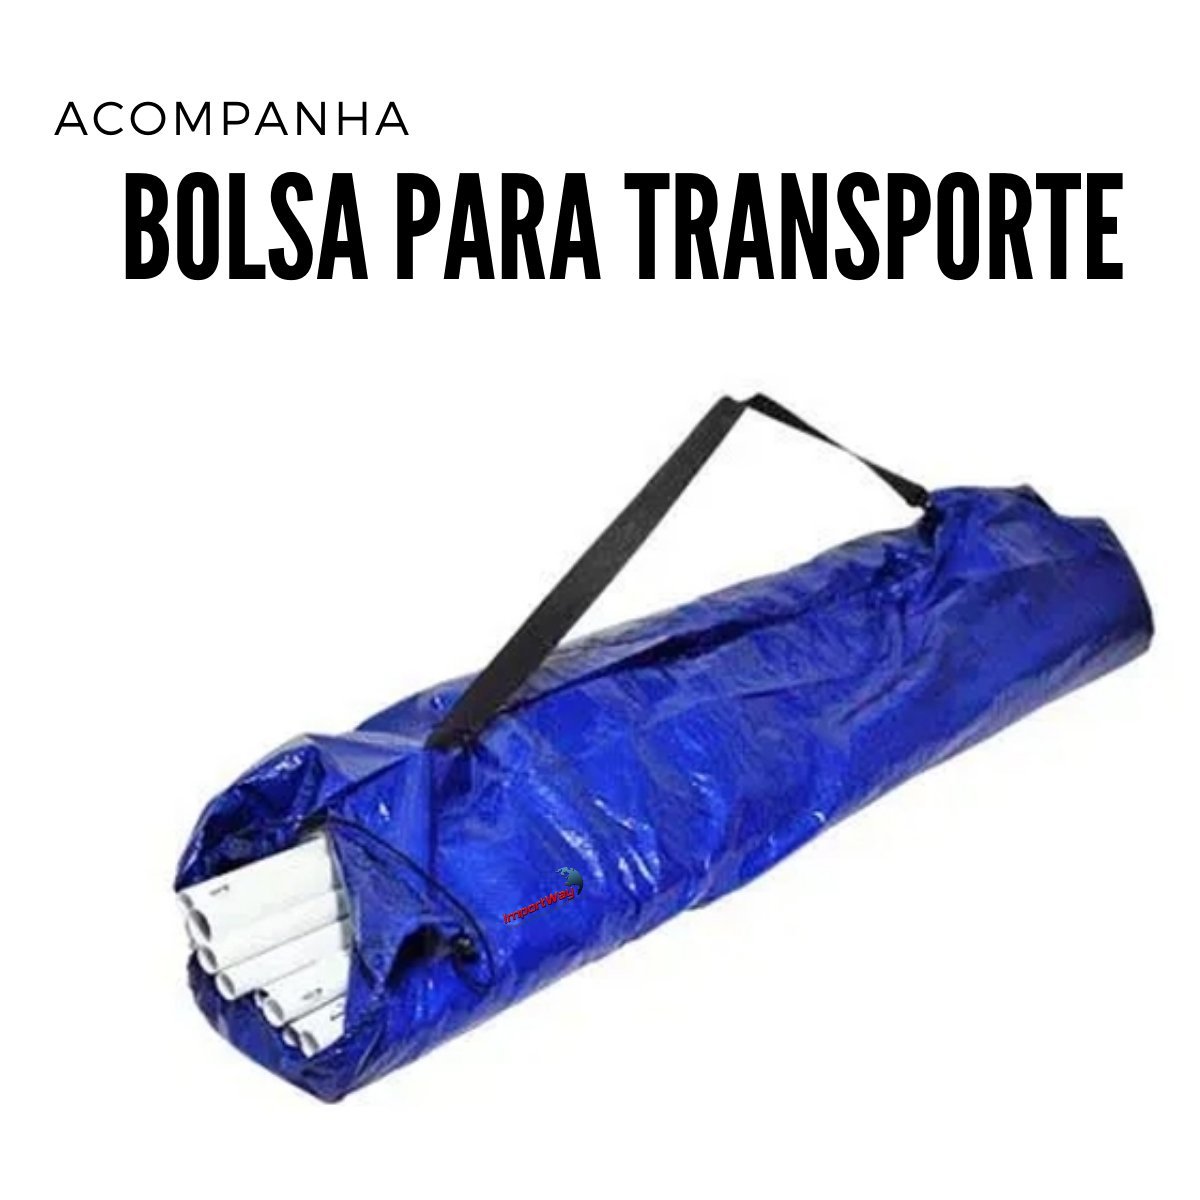 Tenda Montável Gazebo Barraca Camping Praia Piscina Acampamento 3x3M Proteção UV Bolsa Transporte Co - 3